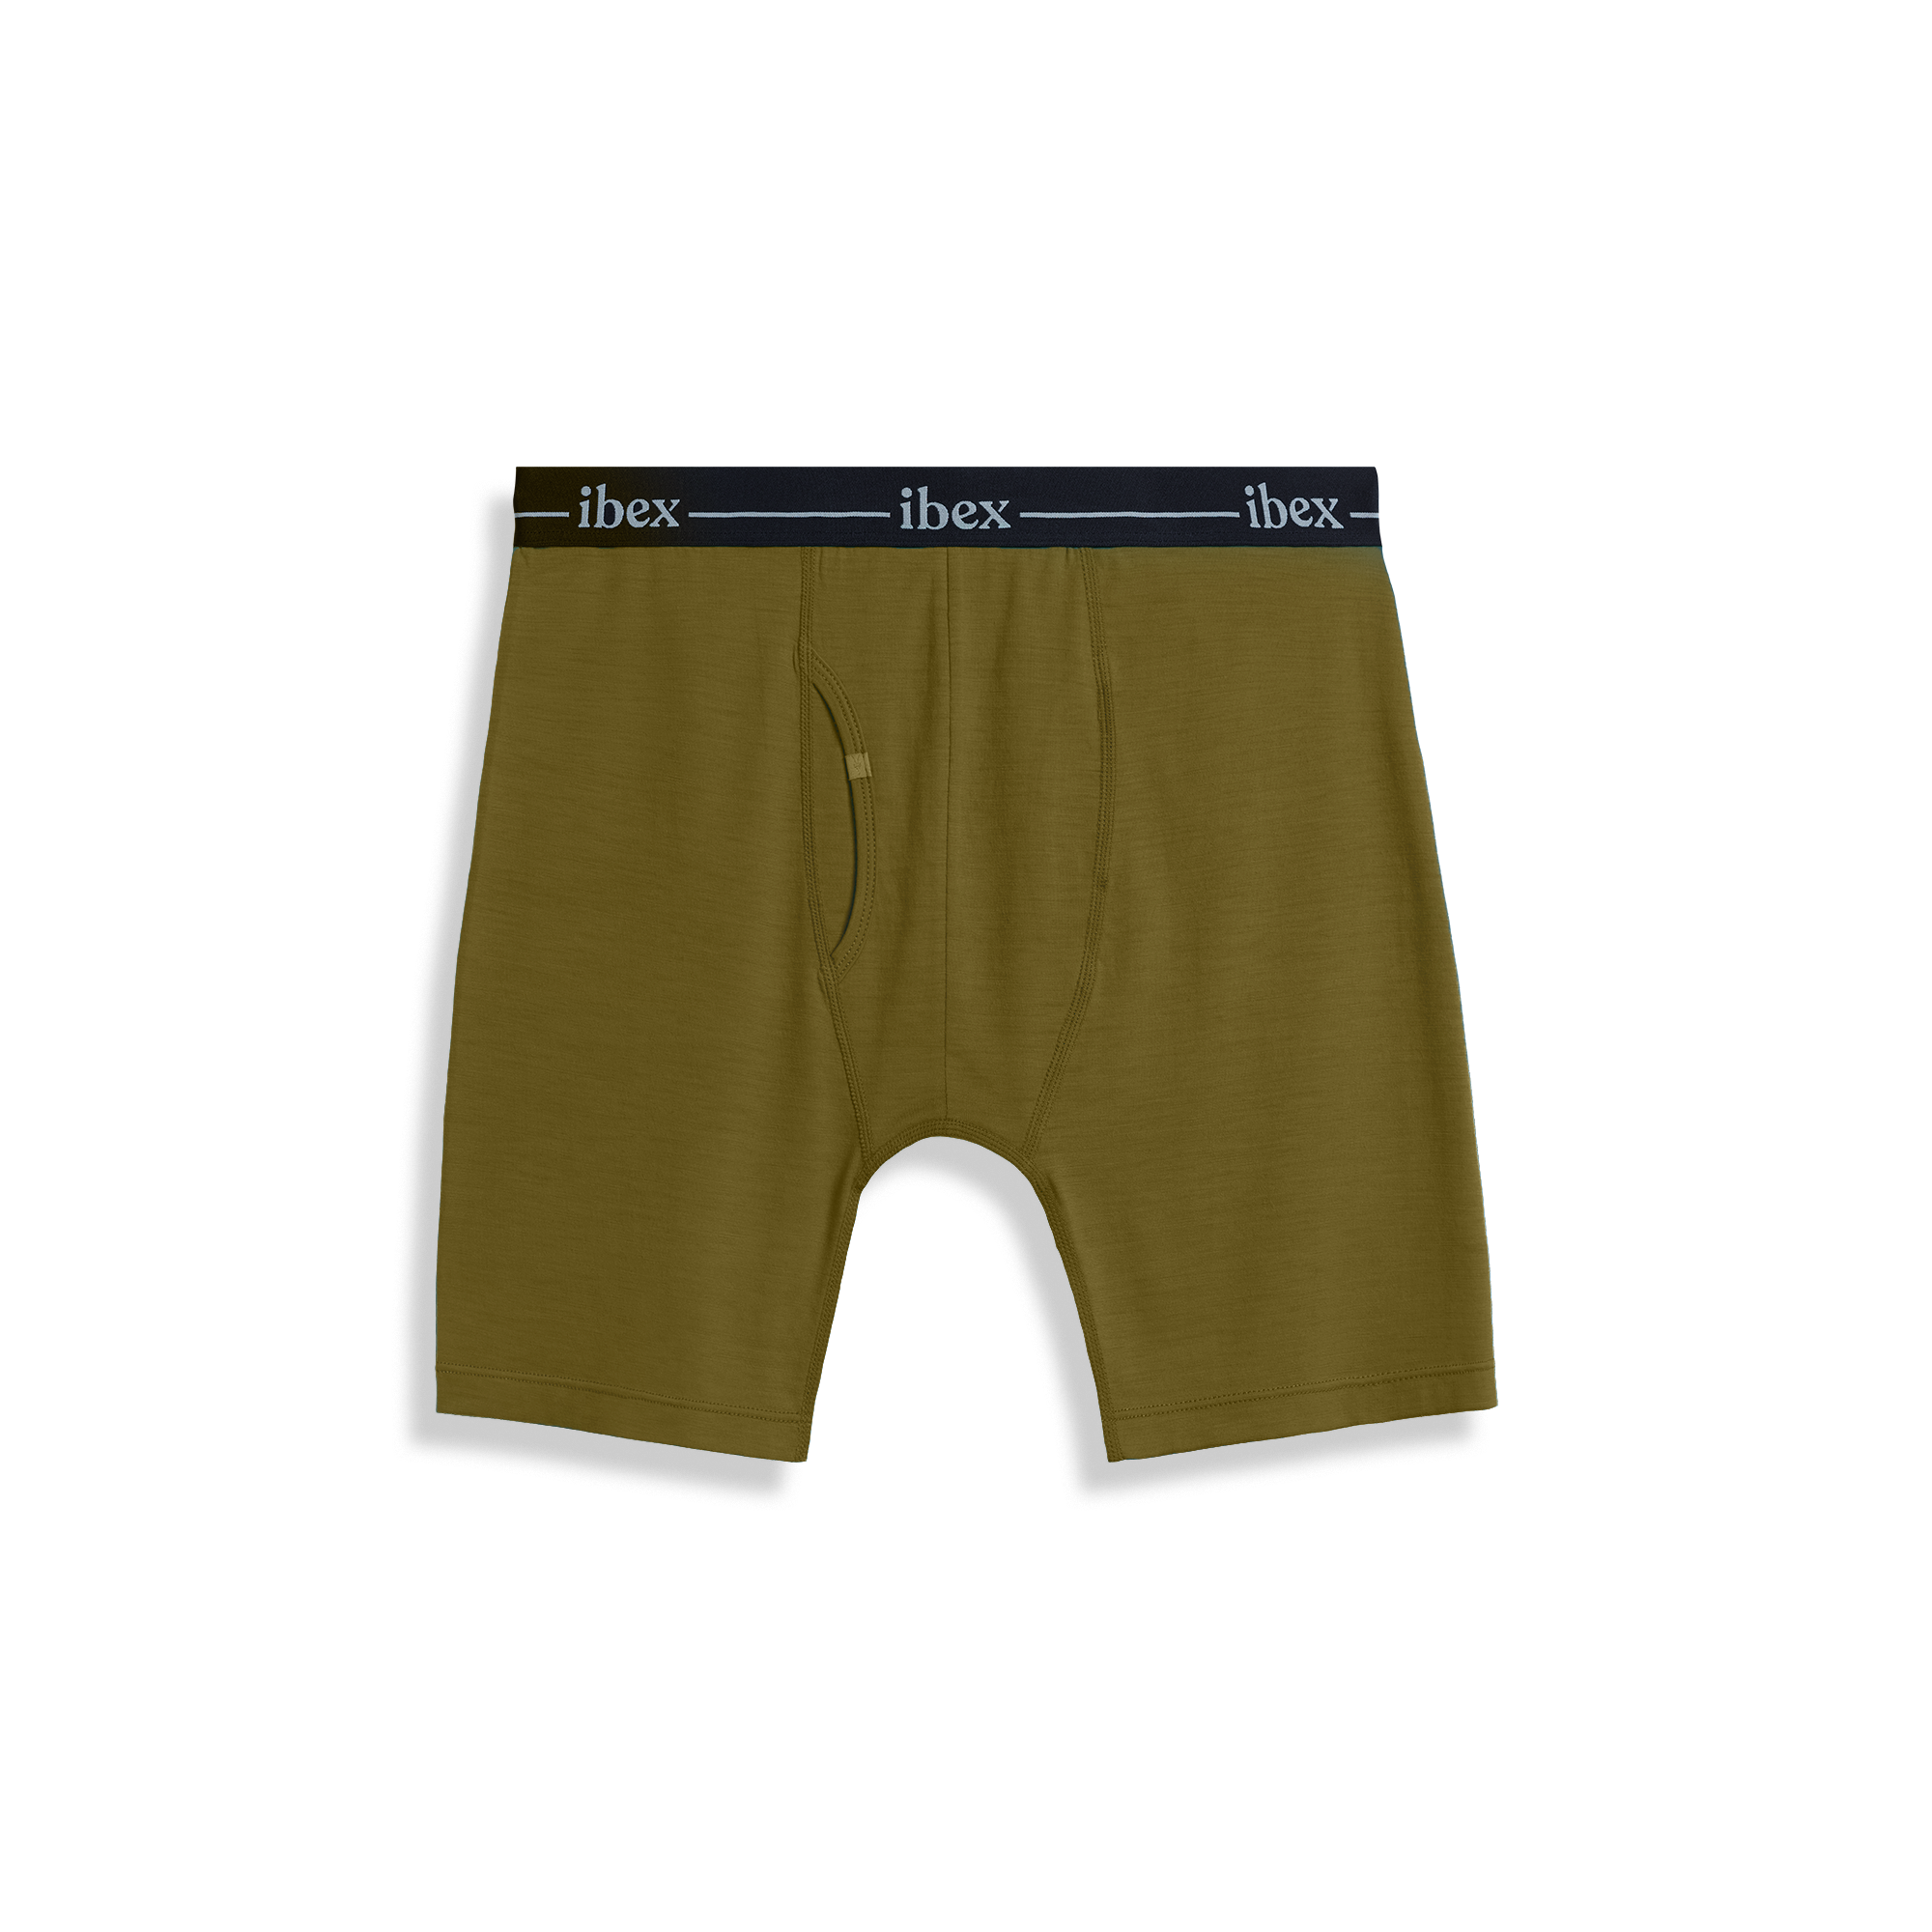 Dark Slate Boxer Brief in Micro Modal – Nth Degree Underwear